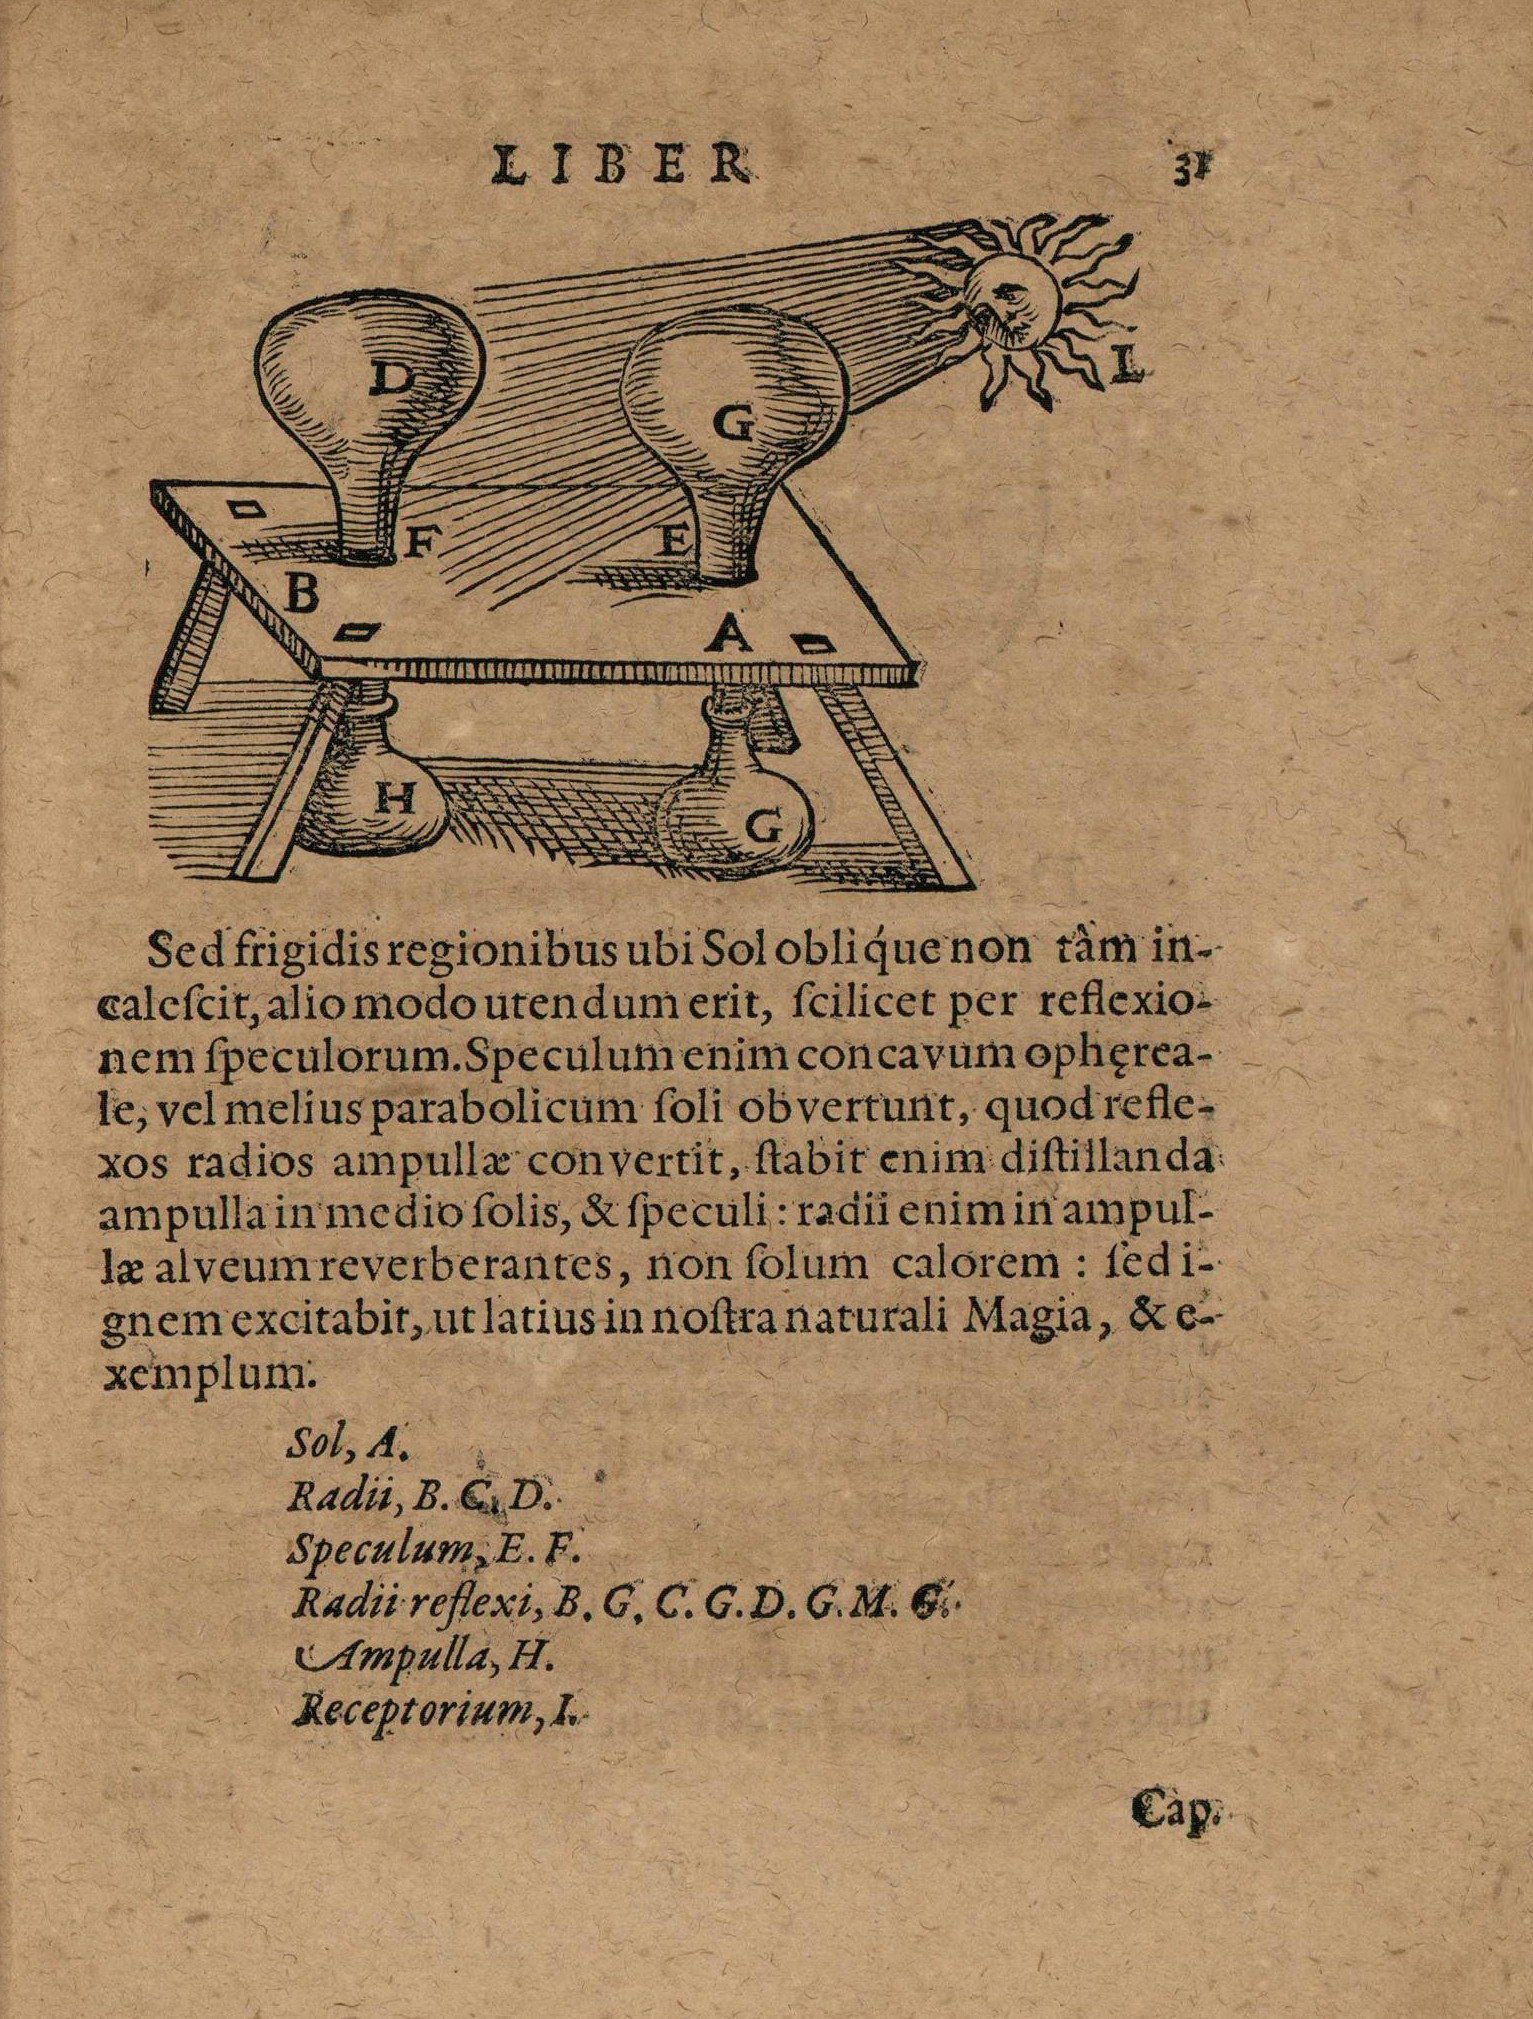 Edition strasbourgeoise d'un traité de Delle Porta sur la distillation, figure de la distillation par le soleil 